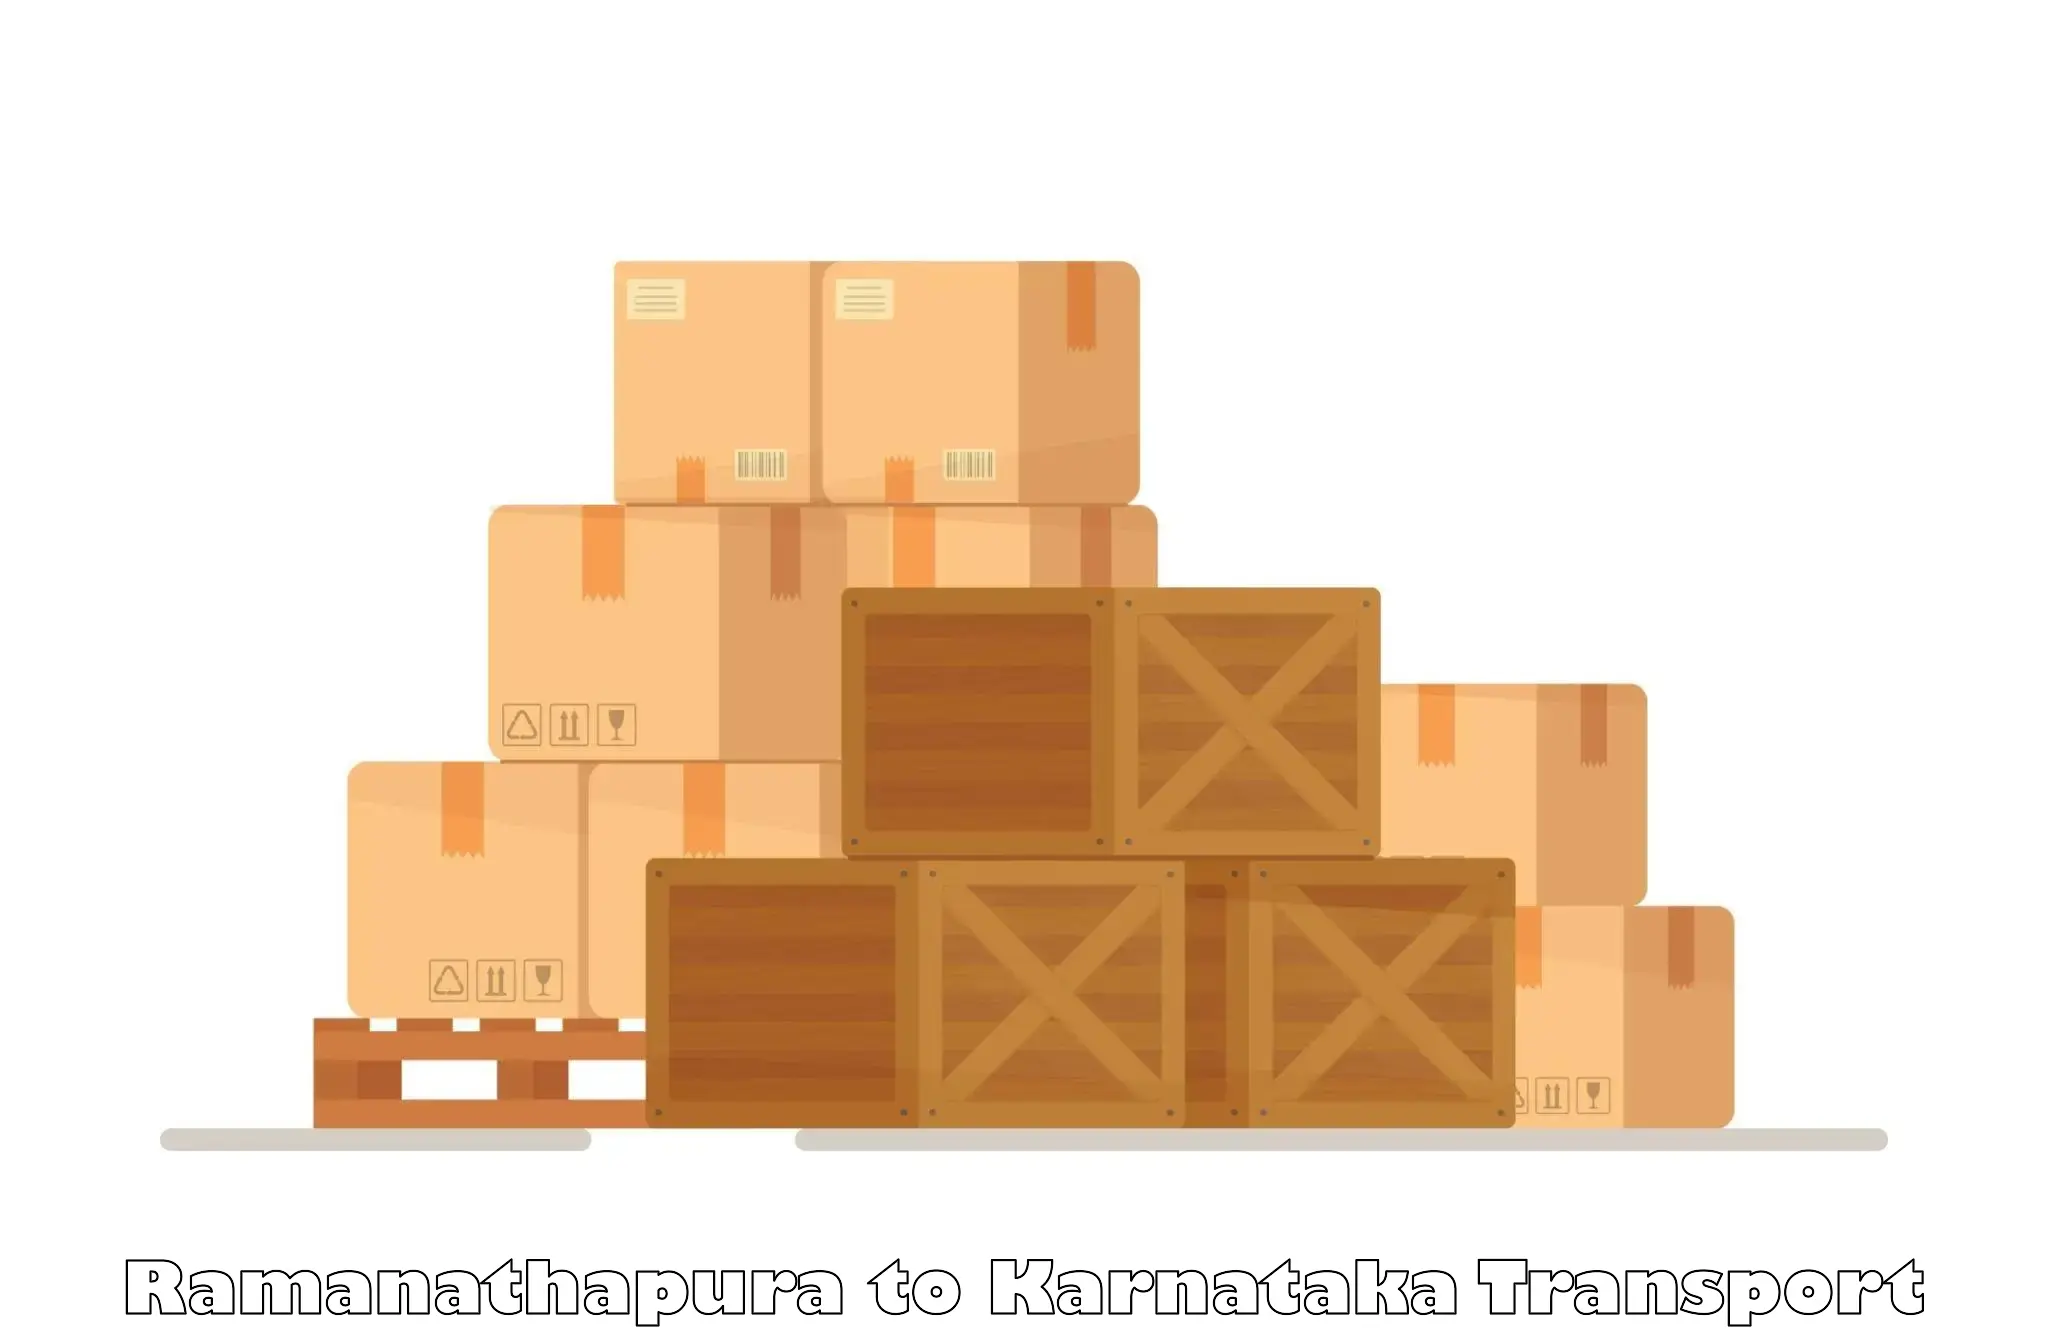 Cargo transportation services Ramanathapura to Davangere